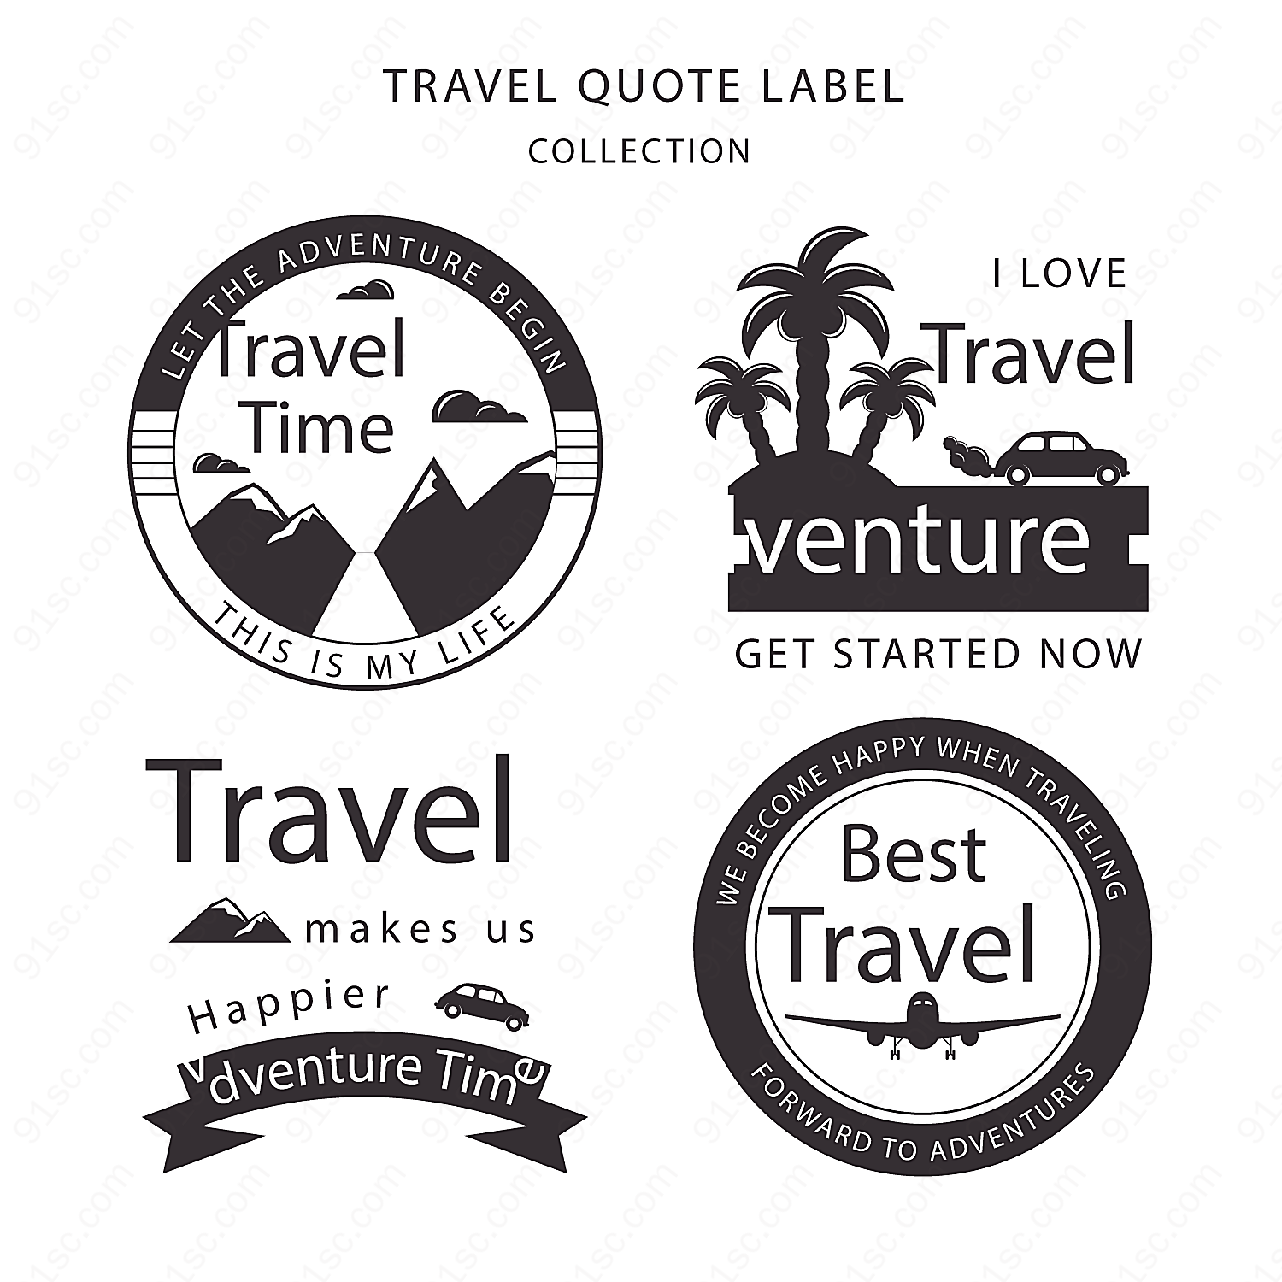 旅行引述语标签label矢量